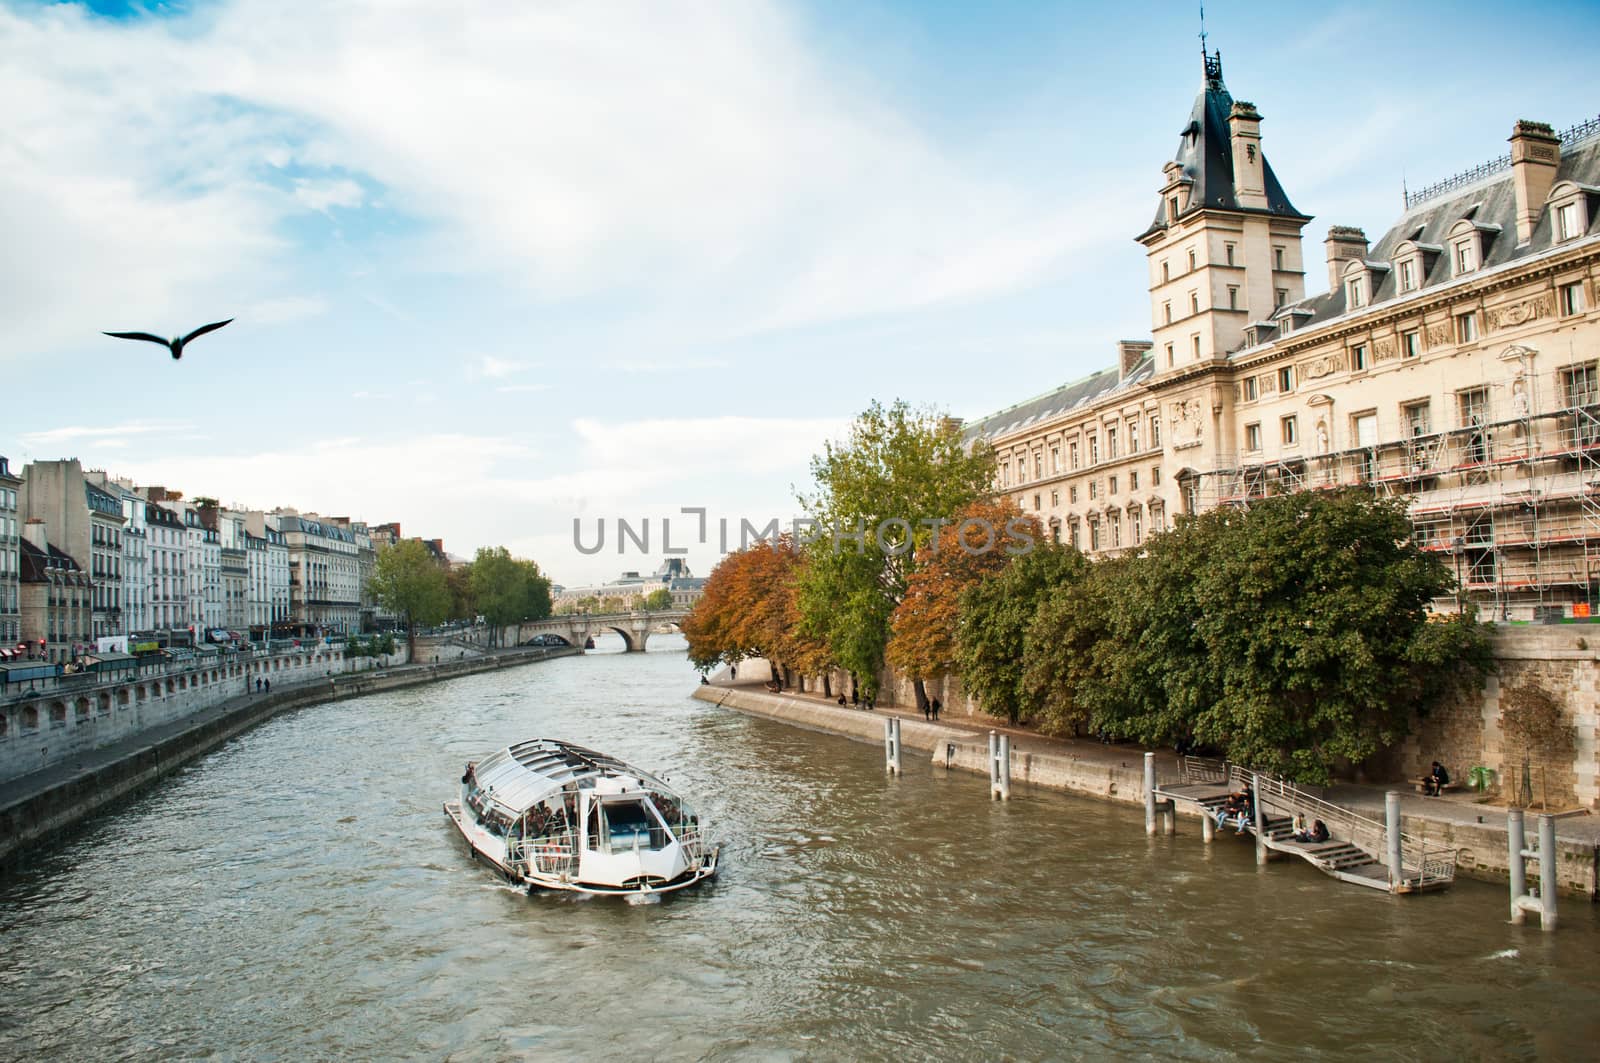 Seine river in Paris by NeydtStock